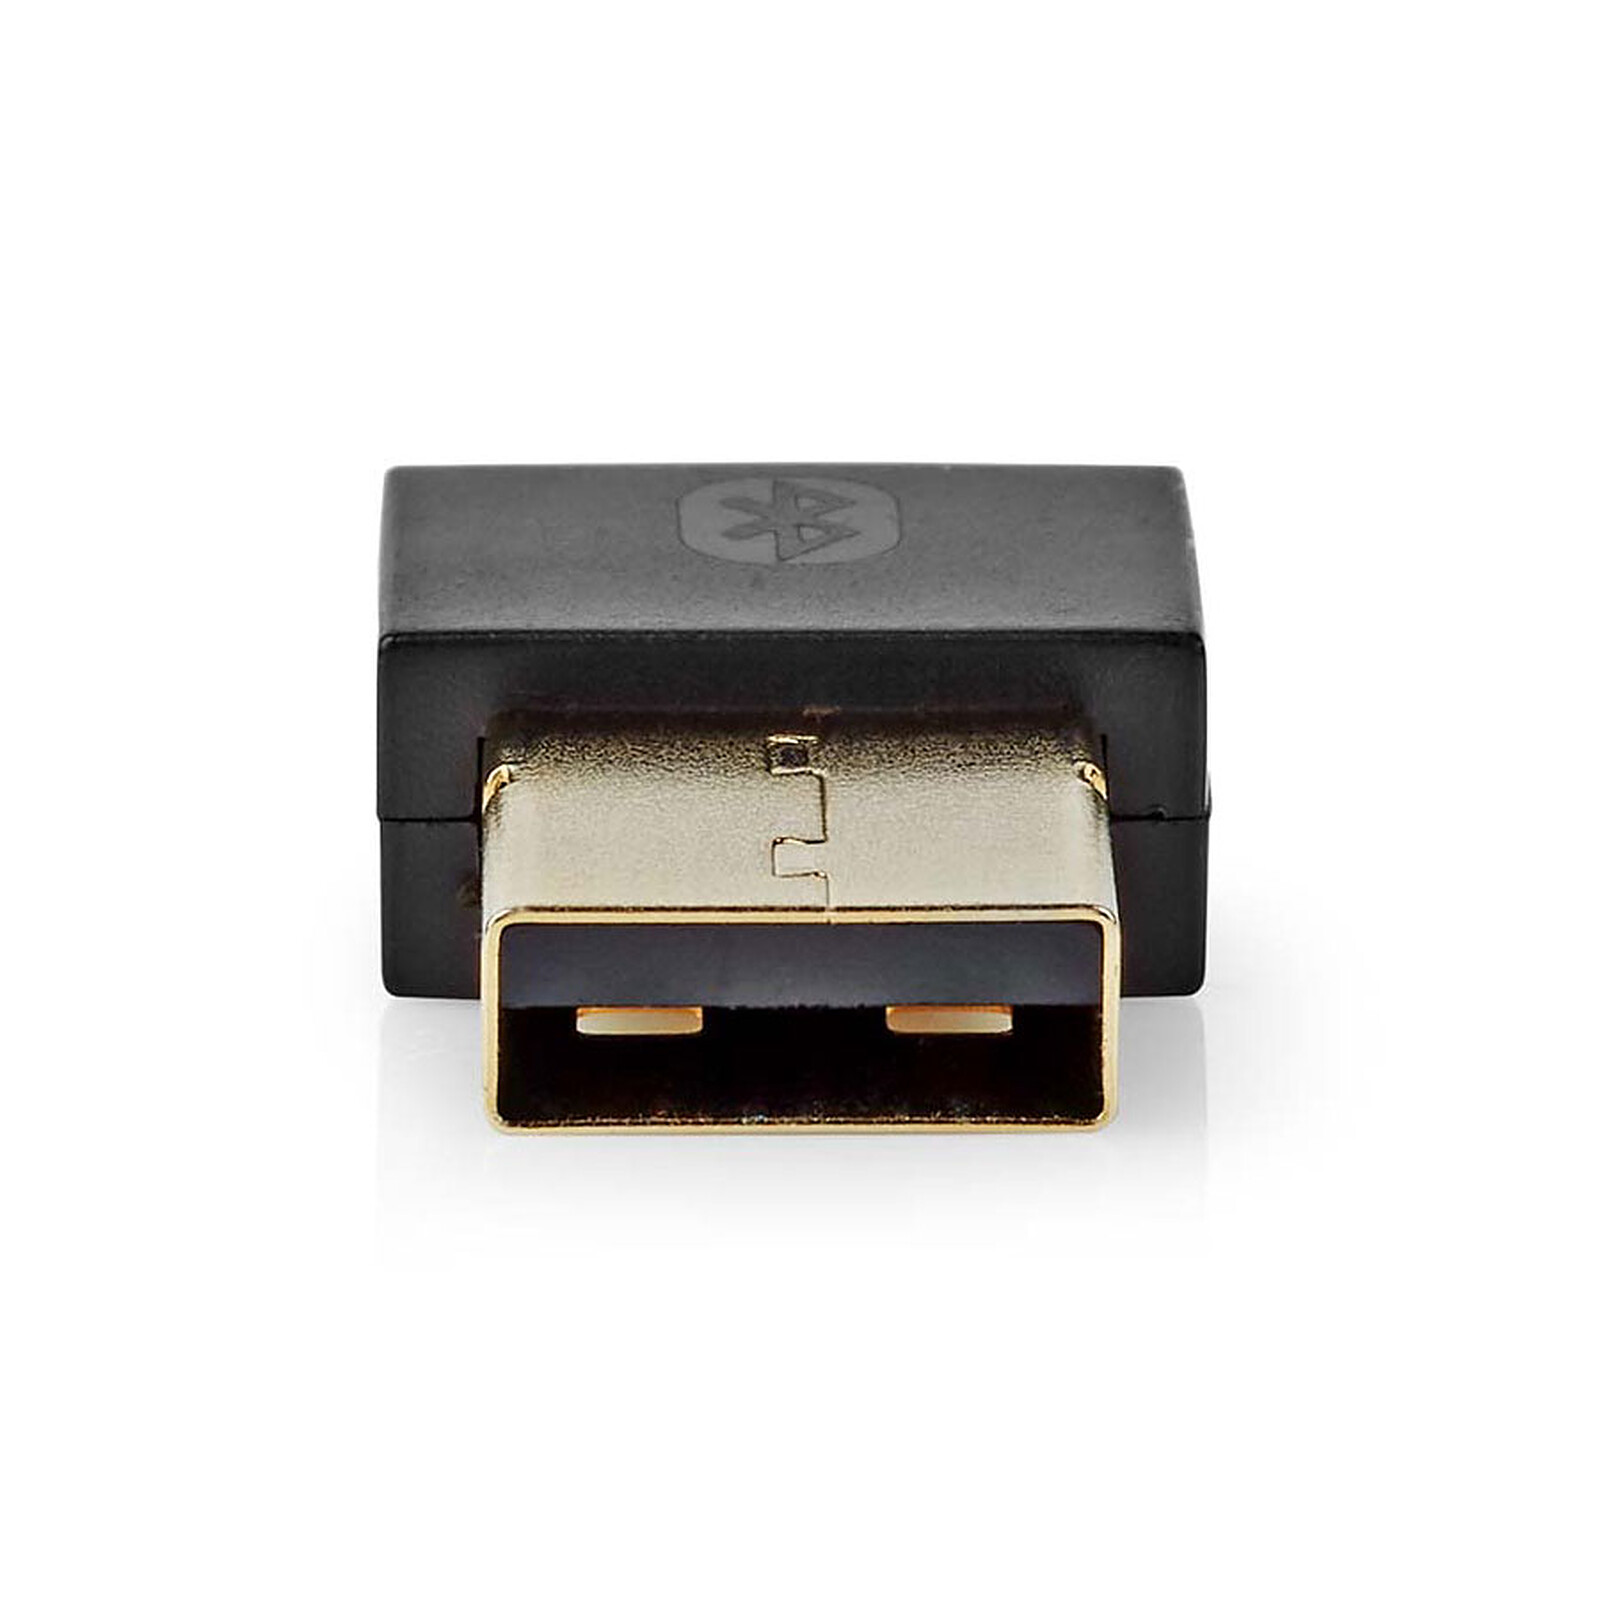 Dongle Micro USB Bluetooth 4.0 de Nedis - Adaptador Bluetooth - LDLC